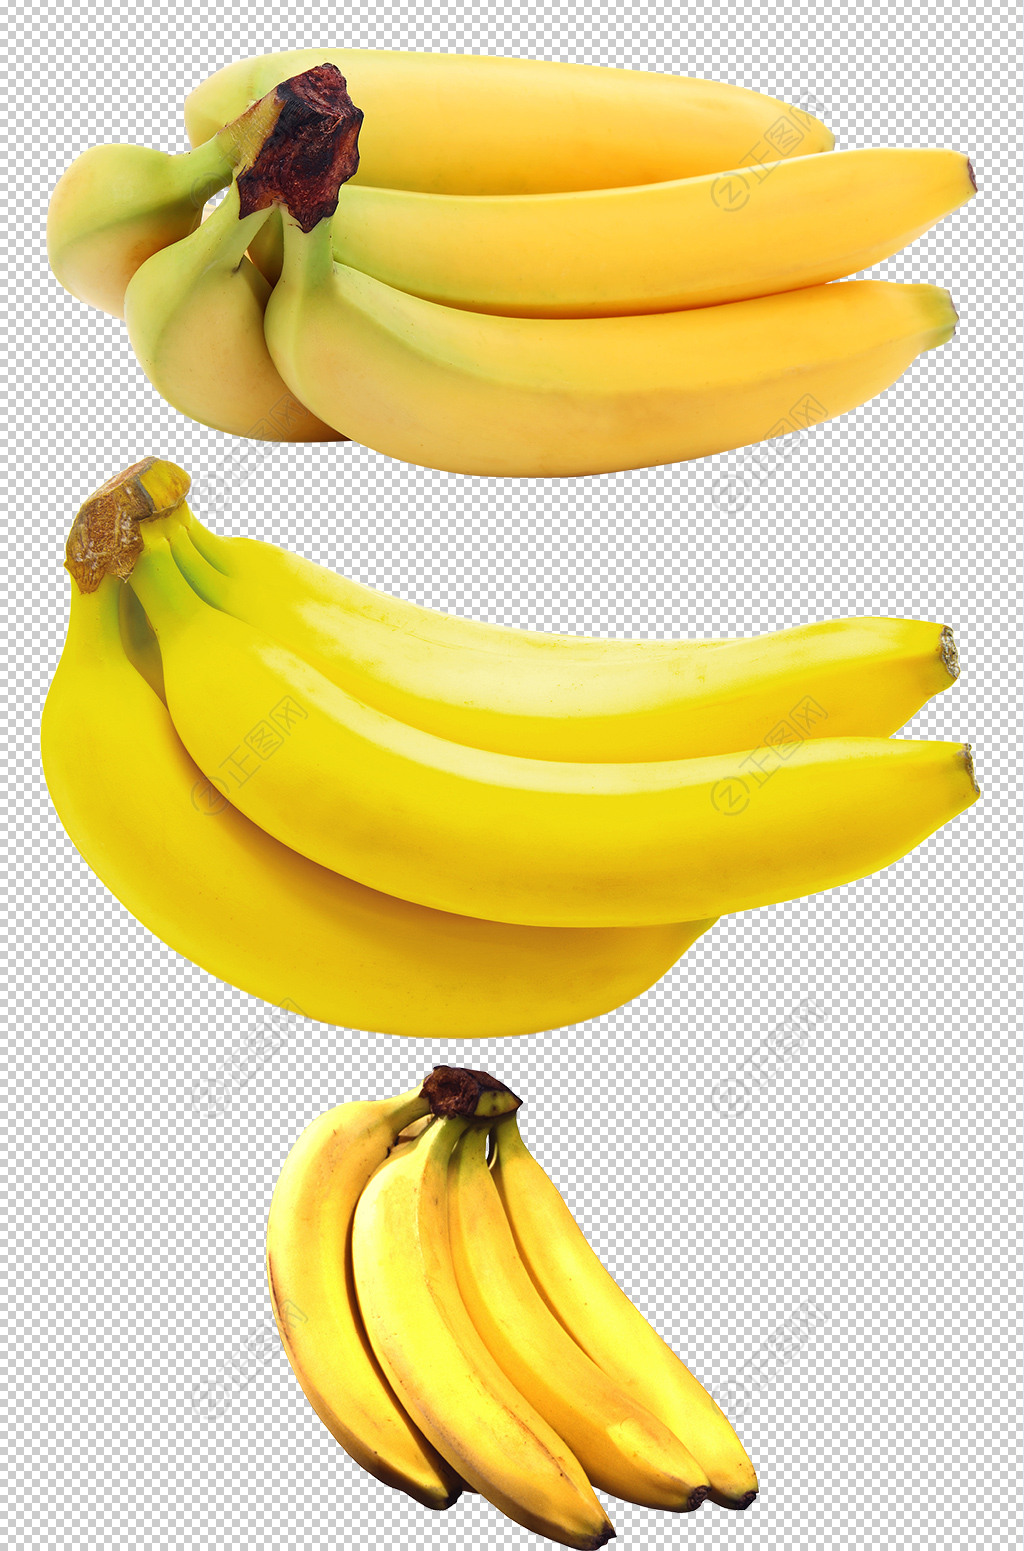 图片素材 : 香蕉, 切片, 件, 水果 4928x3264 - - 1371403 - 素材中国, 高清壁纸 - PxHere摄影图库